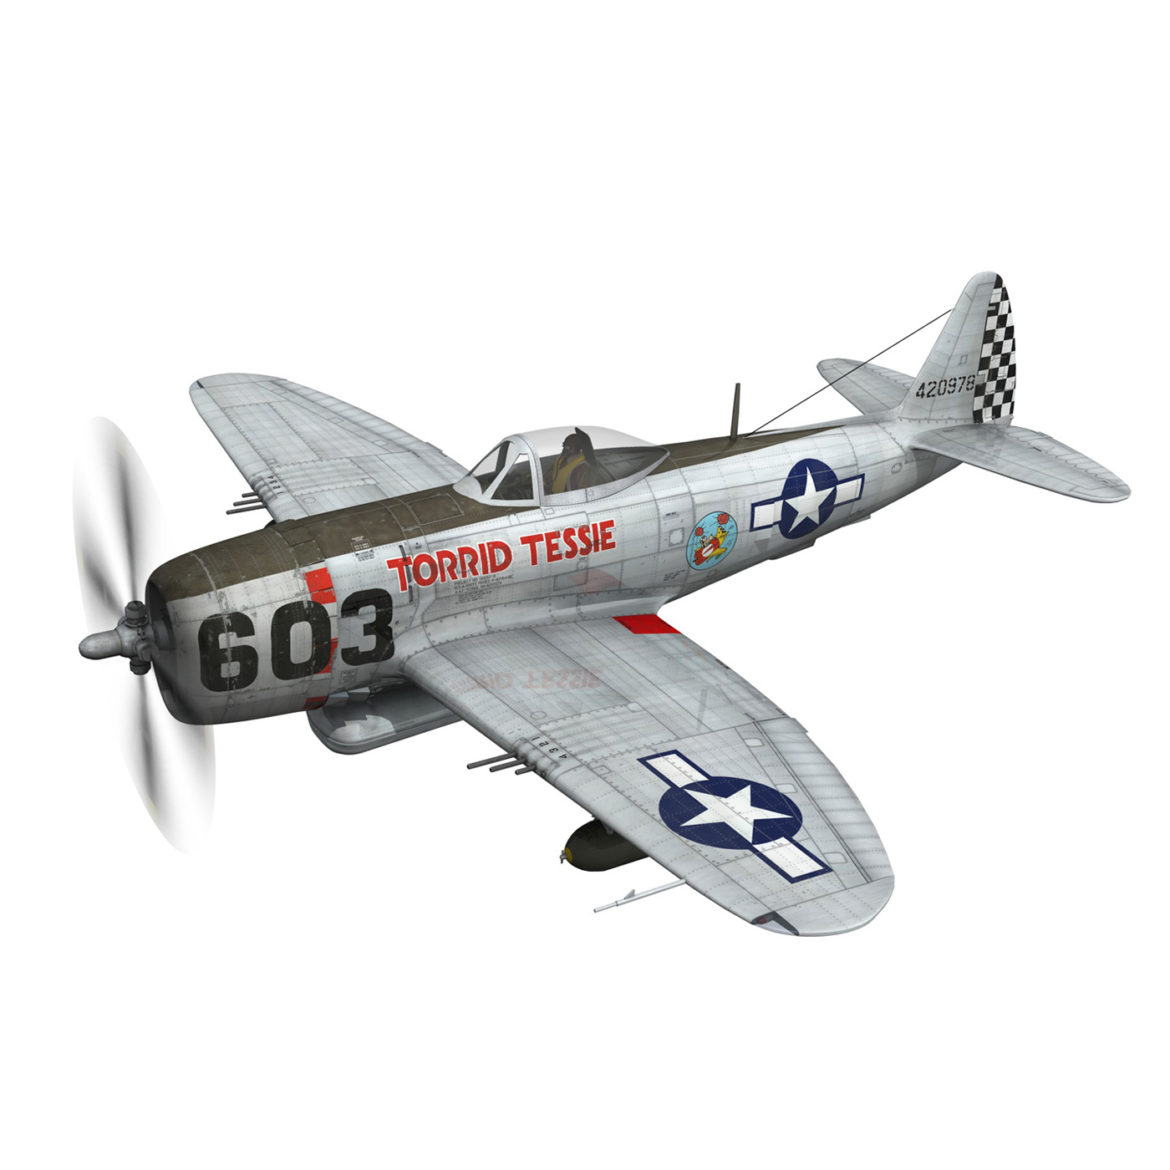 republic p-47d thunderbolt – torrid tessie 3d model 3ds c4d lwo lw lws obj fbx 303864